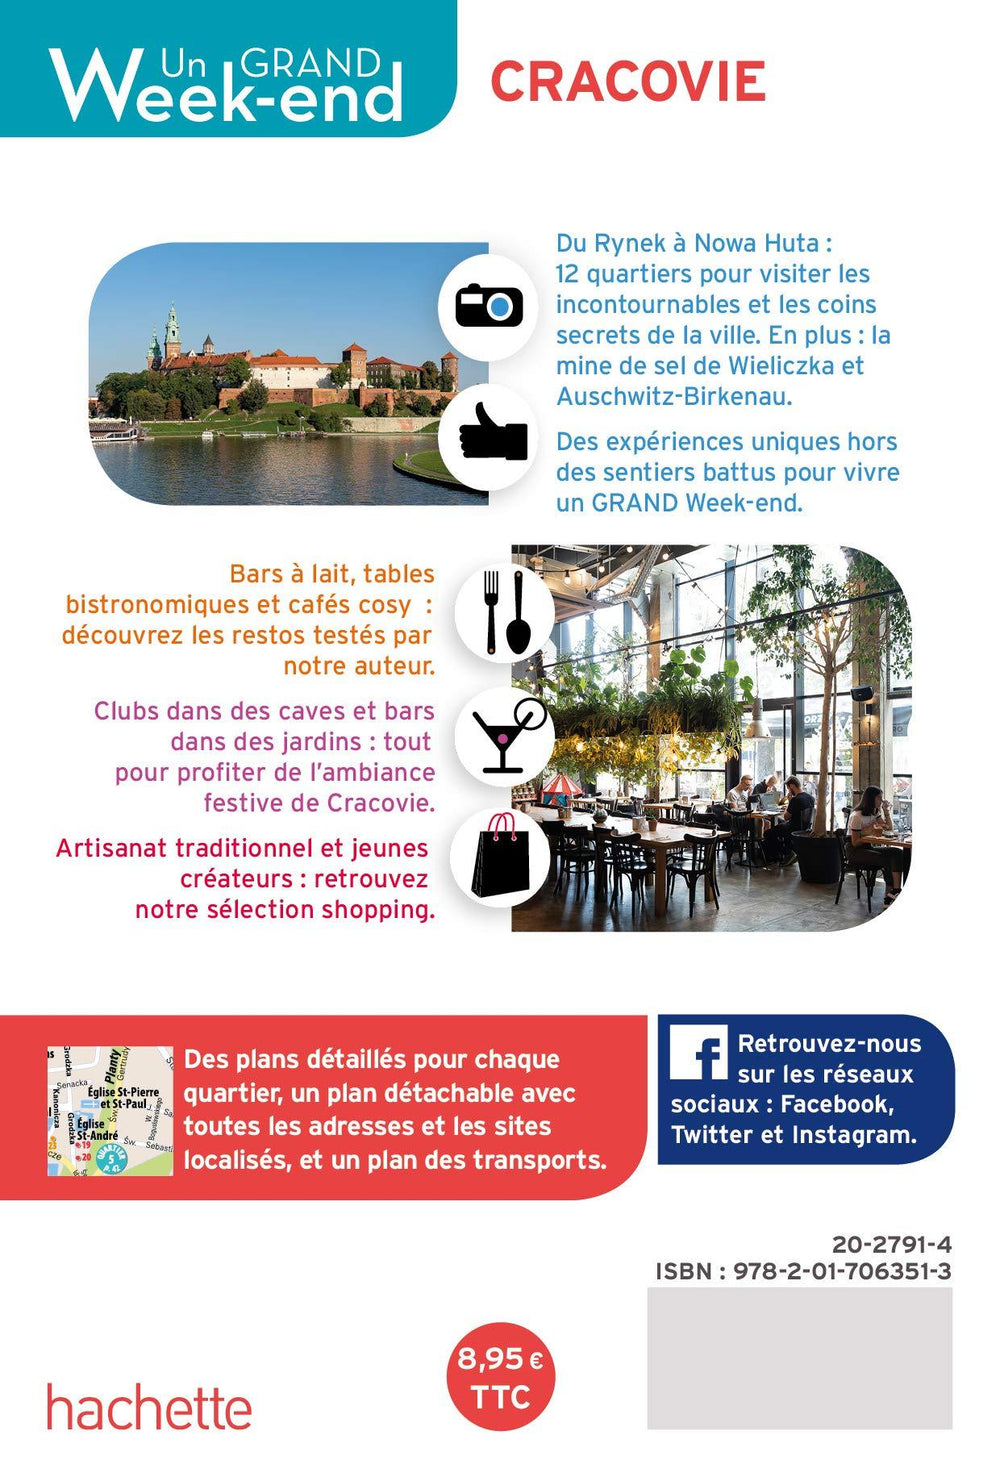 Guide de voyage - Un Grand Week-end : Cracovie | Hachette guide de voyage Hachette 